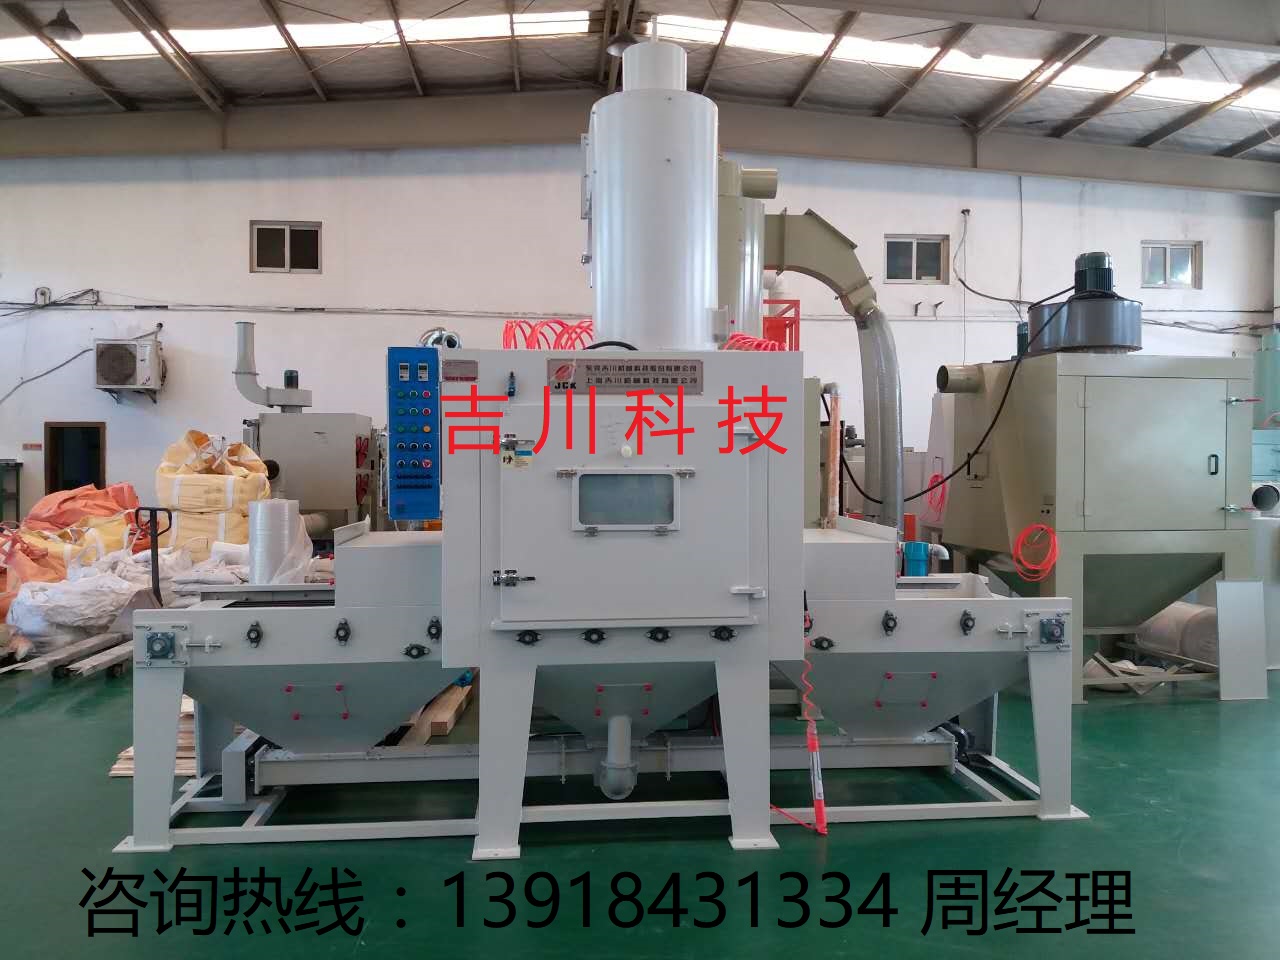 上海吉川输送式自动喷砂机生产厂家 五金制品玻璃板材喷砂机设备